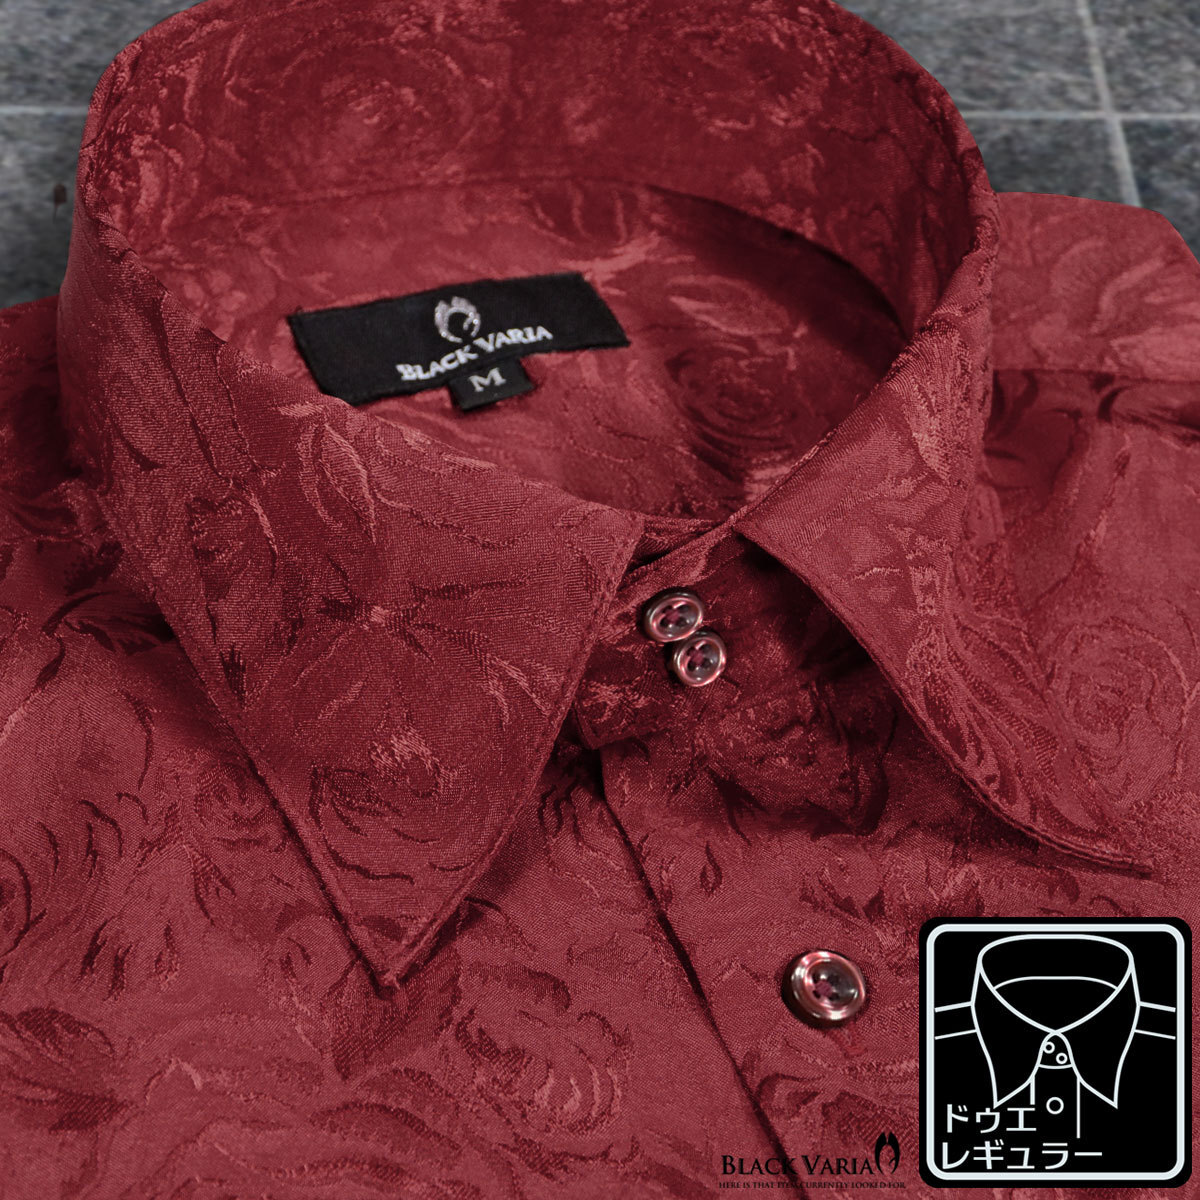 a161222-win BlackVaria ドゥエボットーニ 花柄 薔薇 ジャガード レギュラーカラー サテン ドレスシャツ メンズ(ワインレッド赤) L 上品_画像1